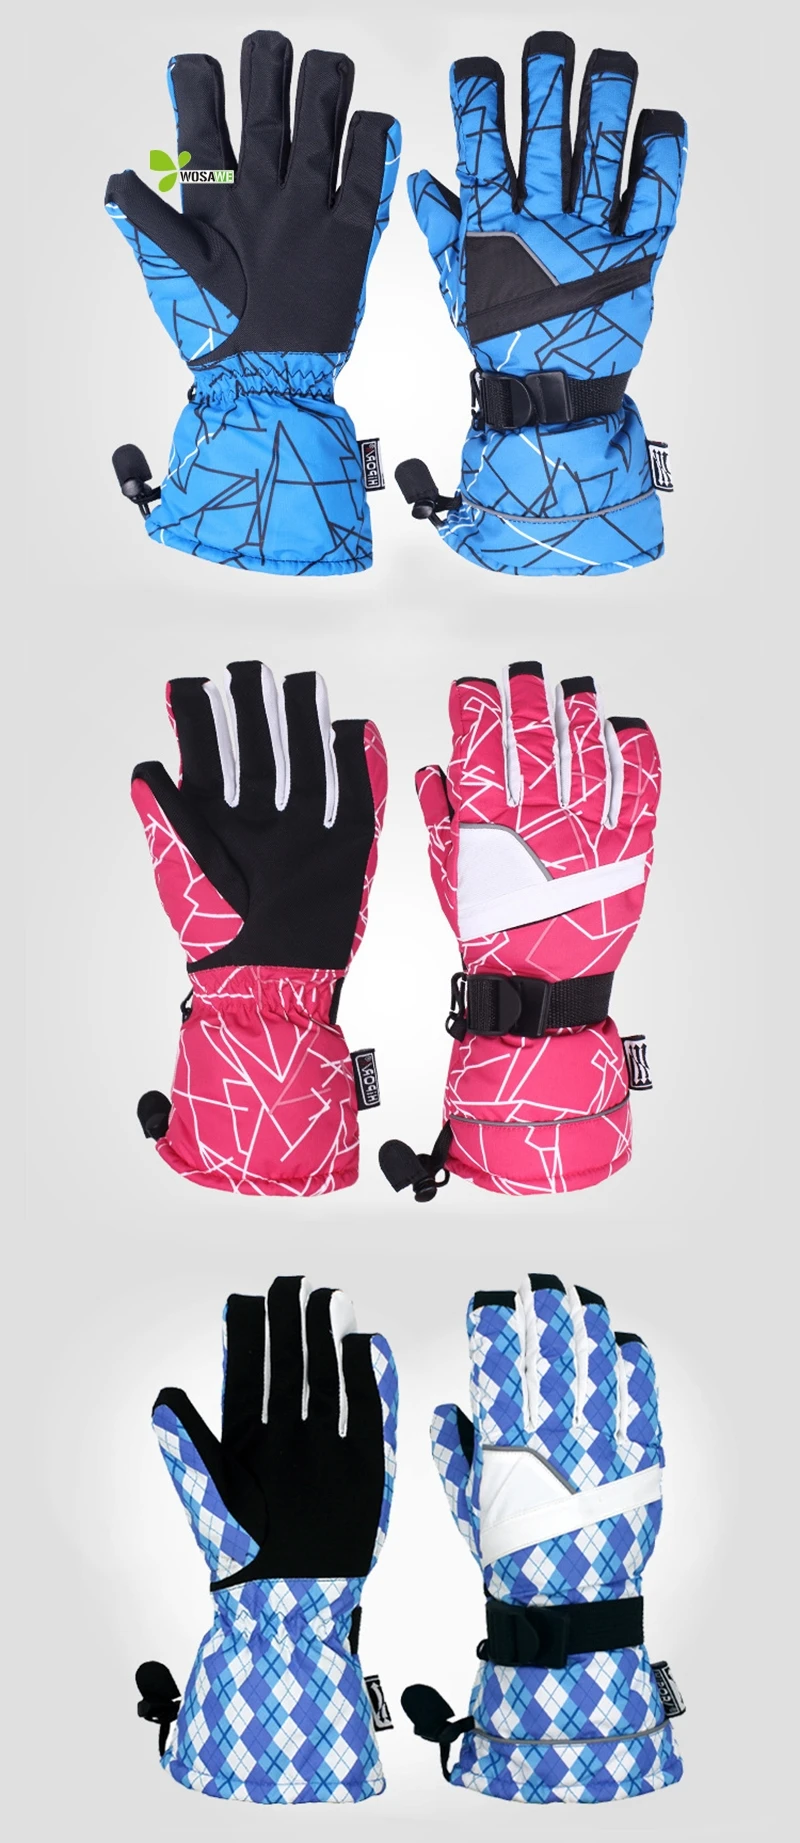 5 водонепроницаемый слой взрослых зимние лыжные перчатки термо флис скейтборд защита рук теплые сноуборд гоночные спортивные лыжные перчатки